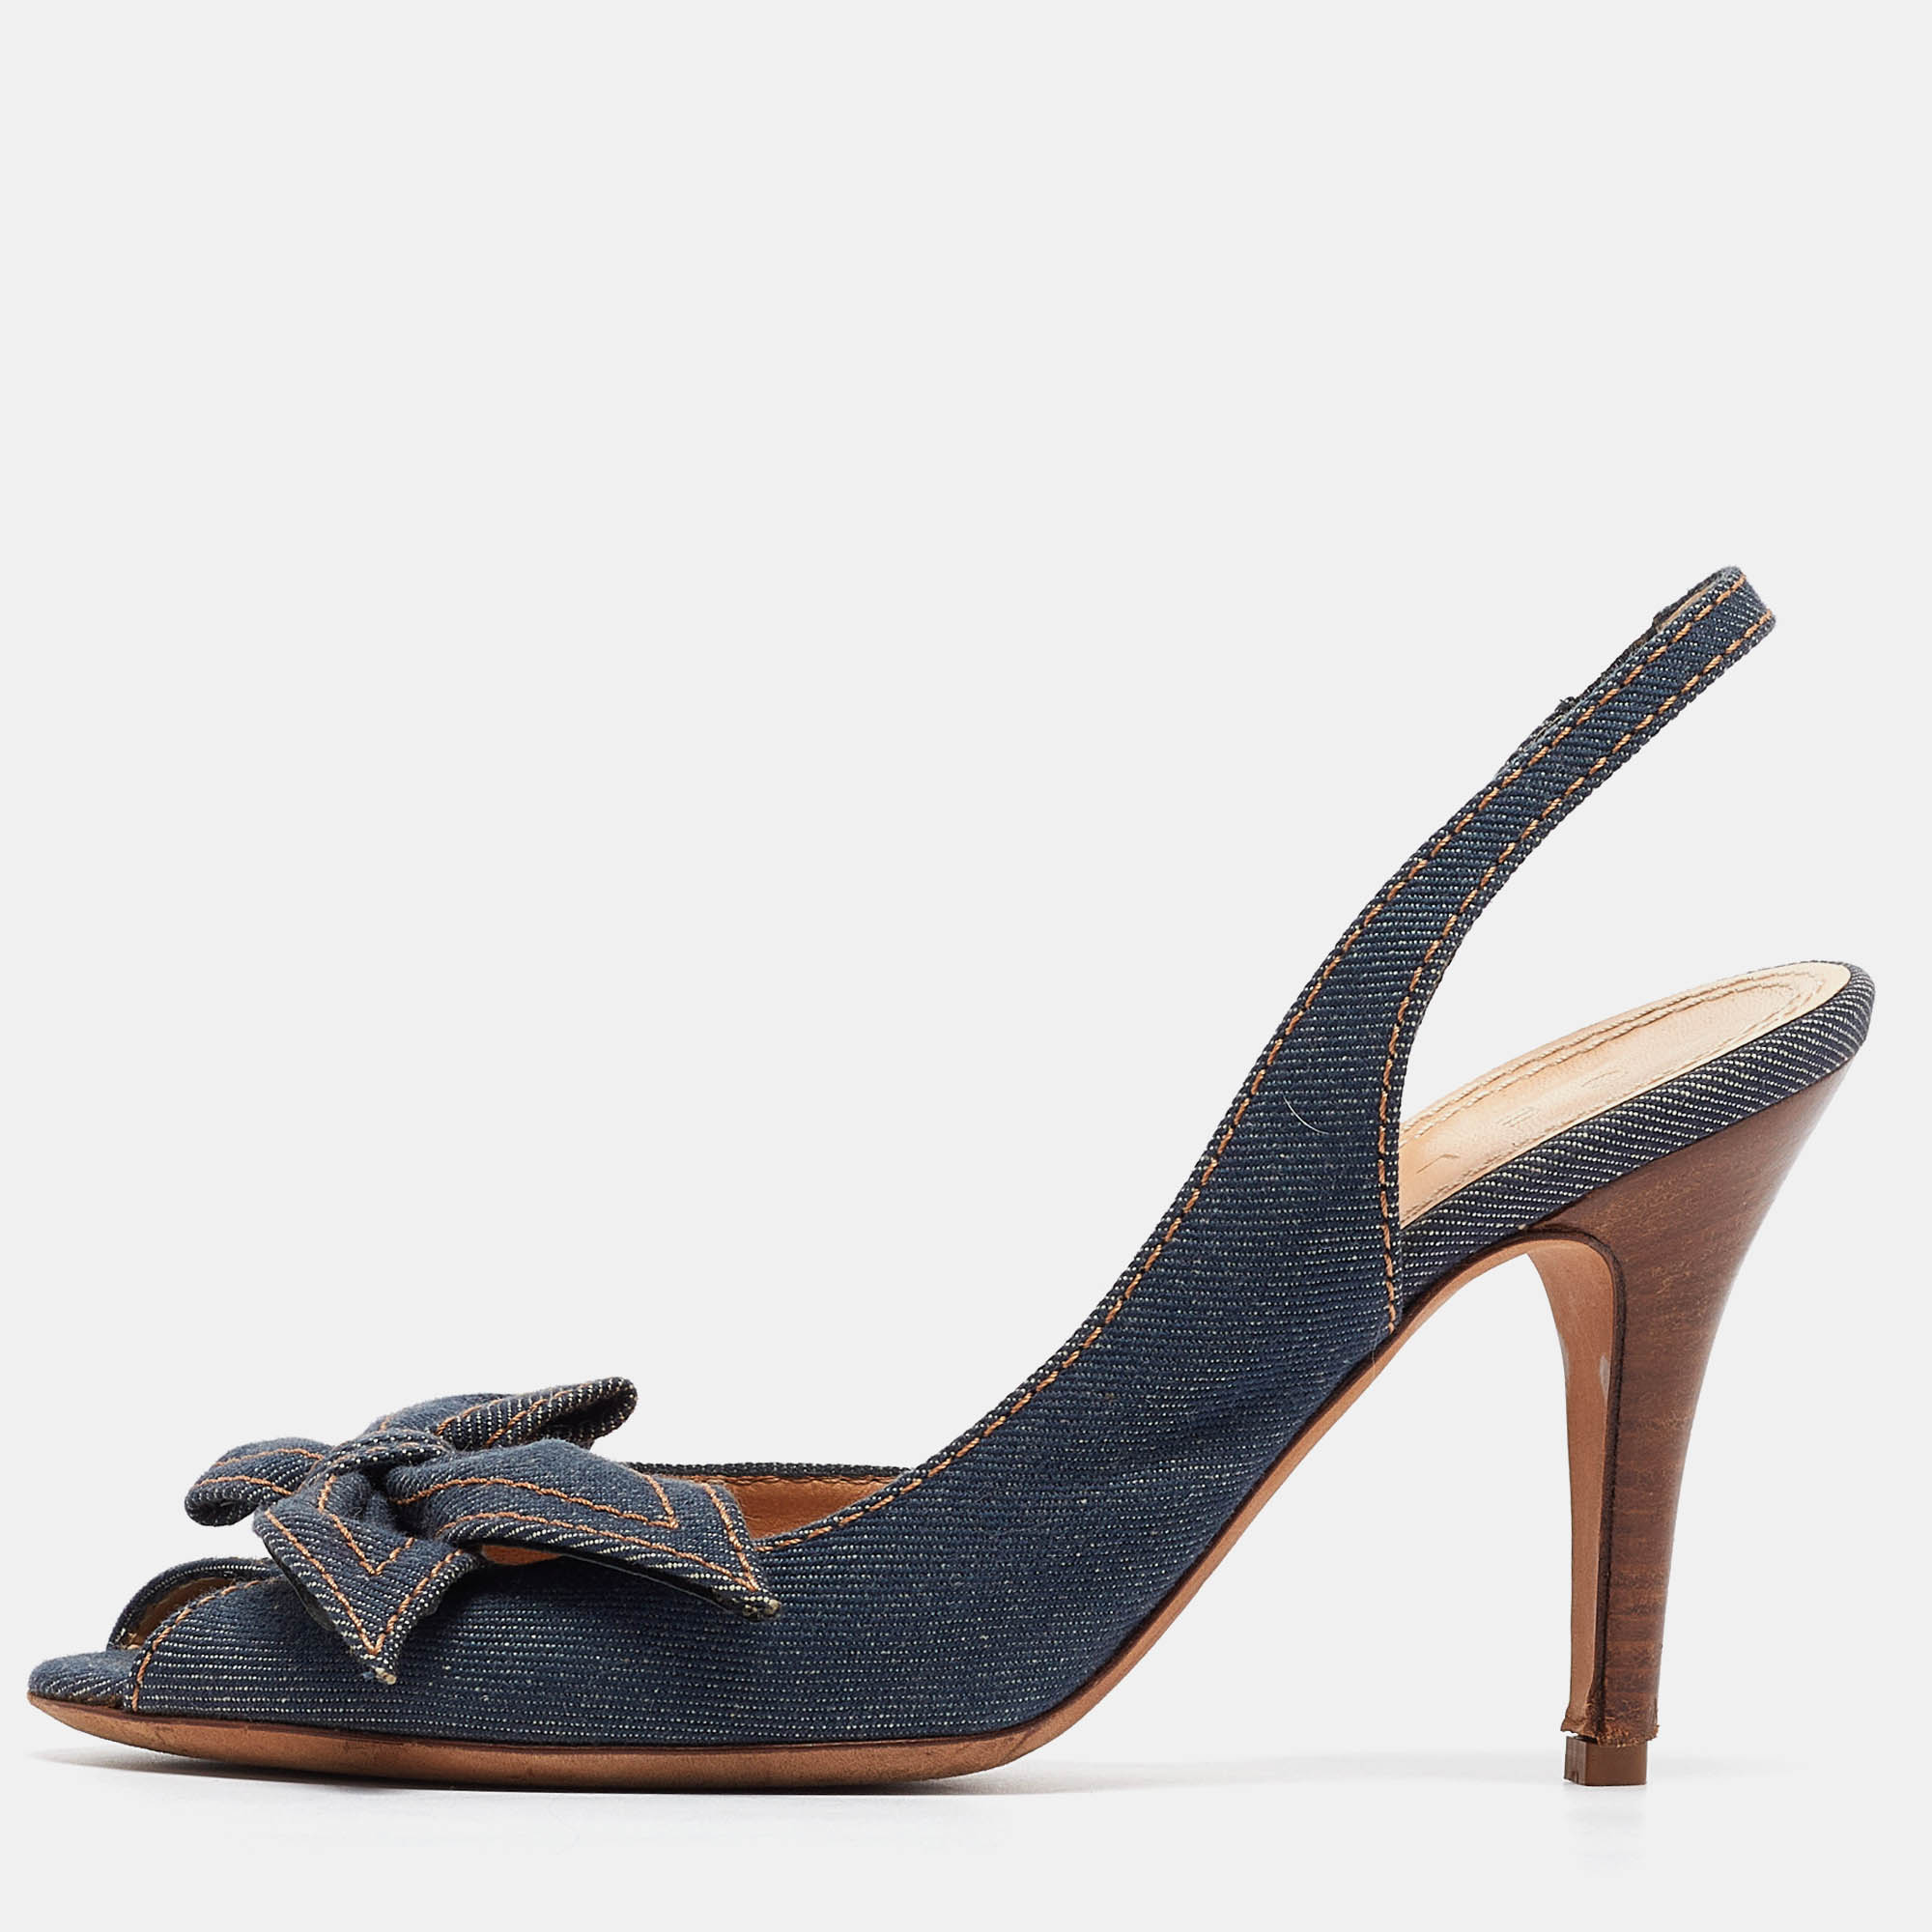 Celine navy blue denim bow d'orsay slingback sandals size 38